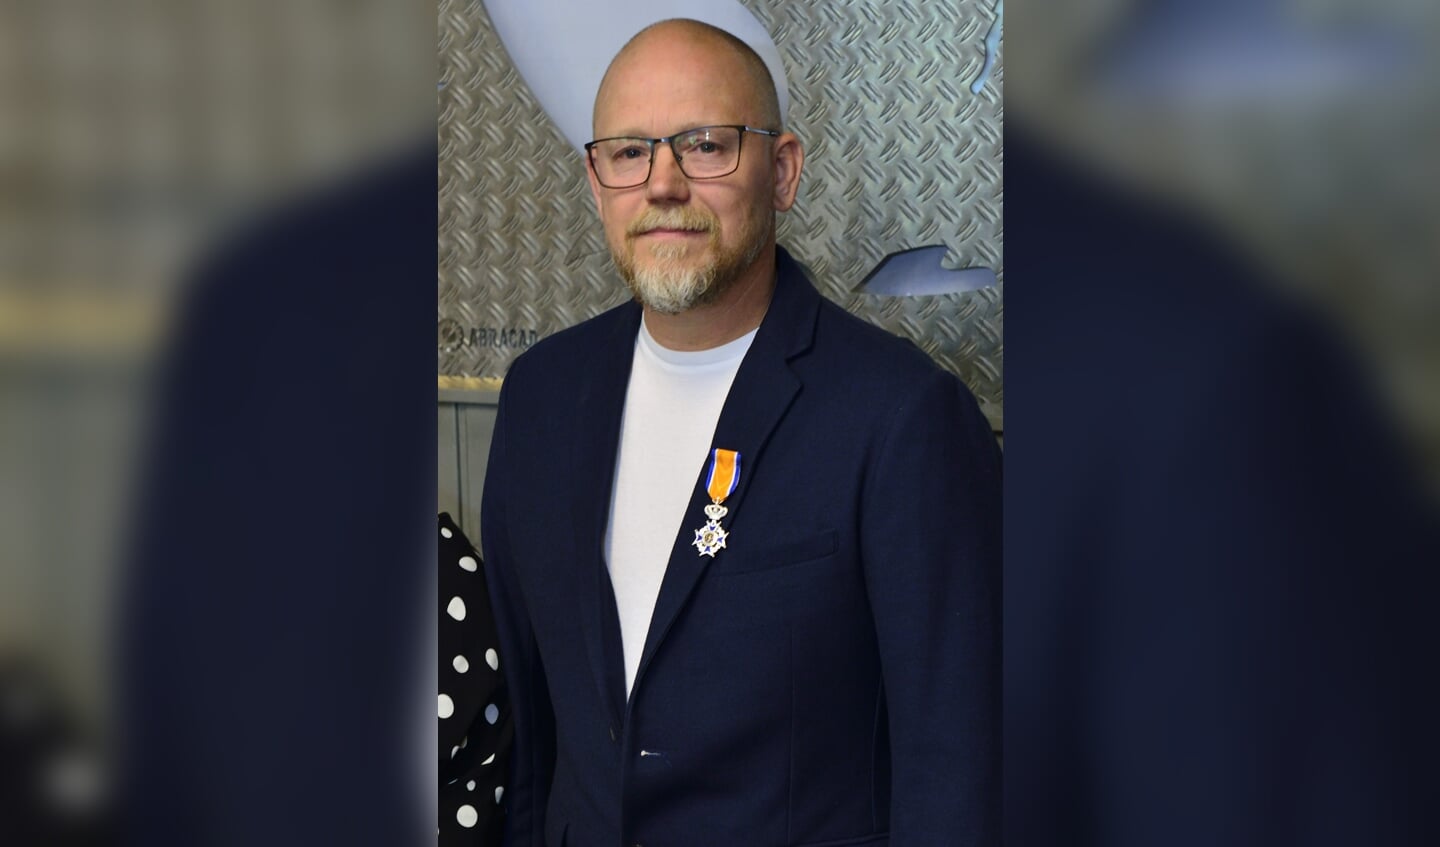 Erwin Deckers is benoemd tot lid in de Orde van Oranje-Nassau